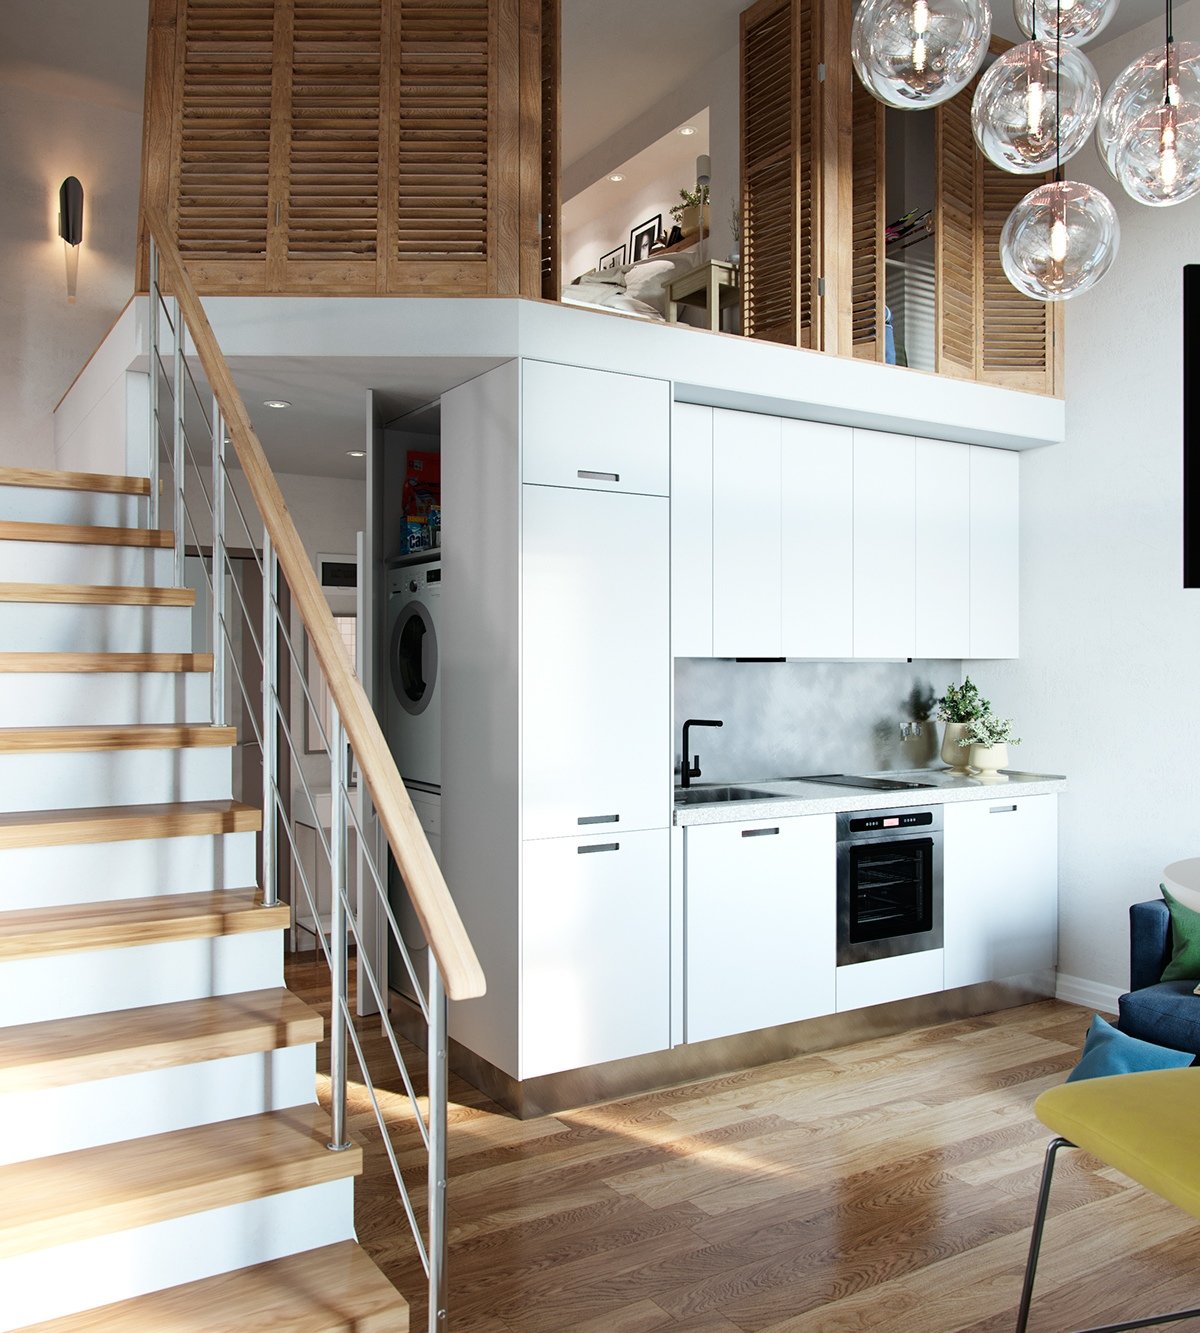 compact home layout with loft bedroom Thiết kế nhân đôi không gian cho những căn nhà nhỏ nhờ gác xép